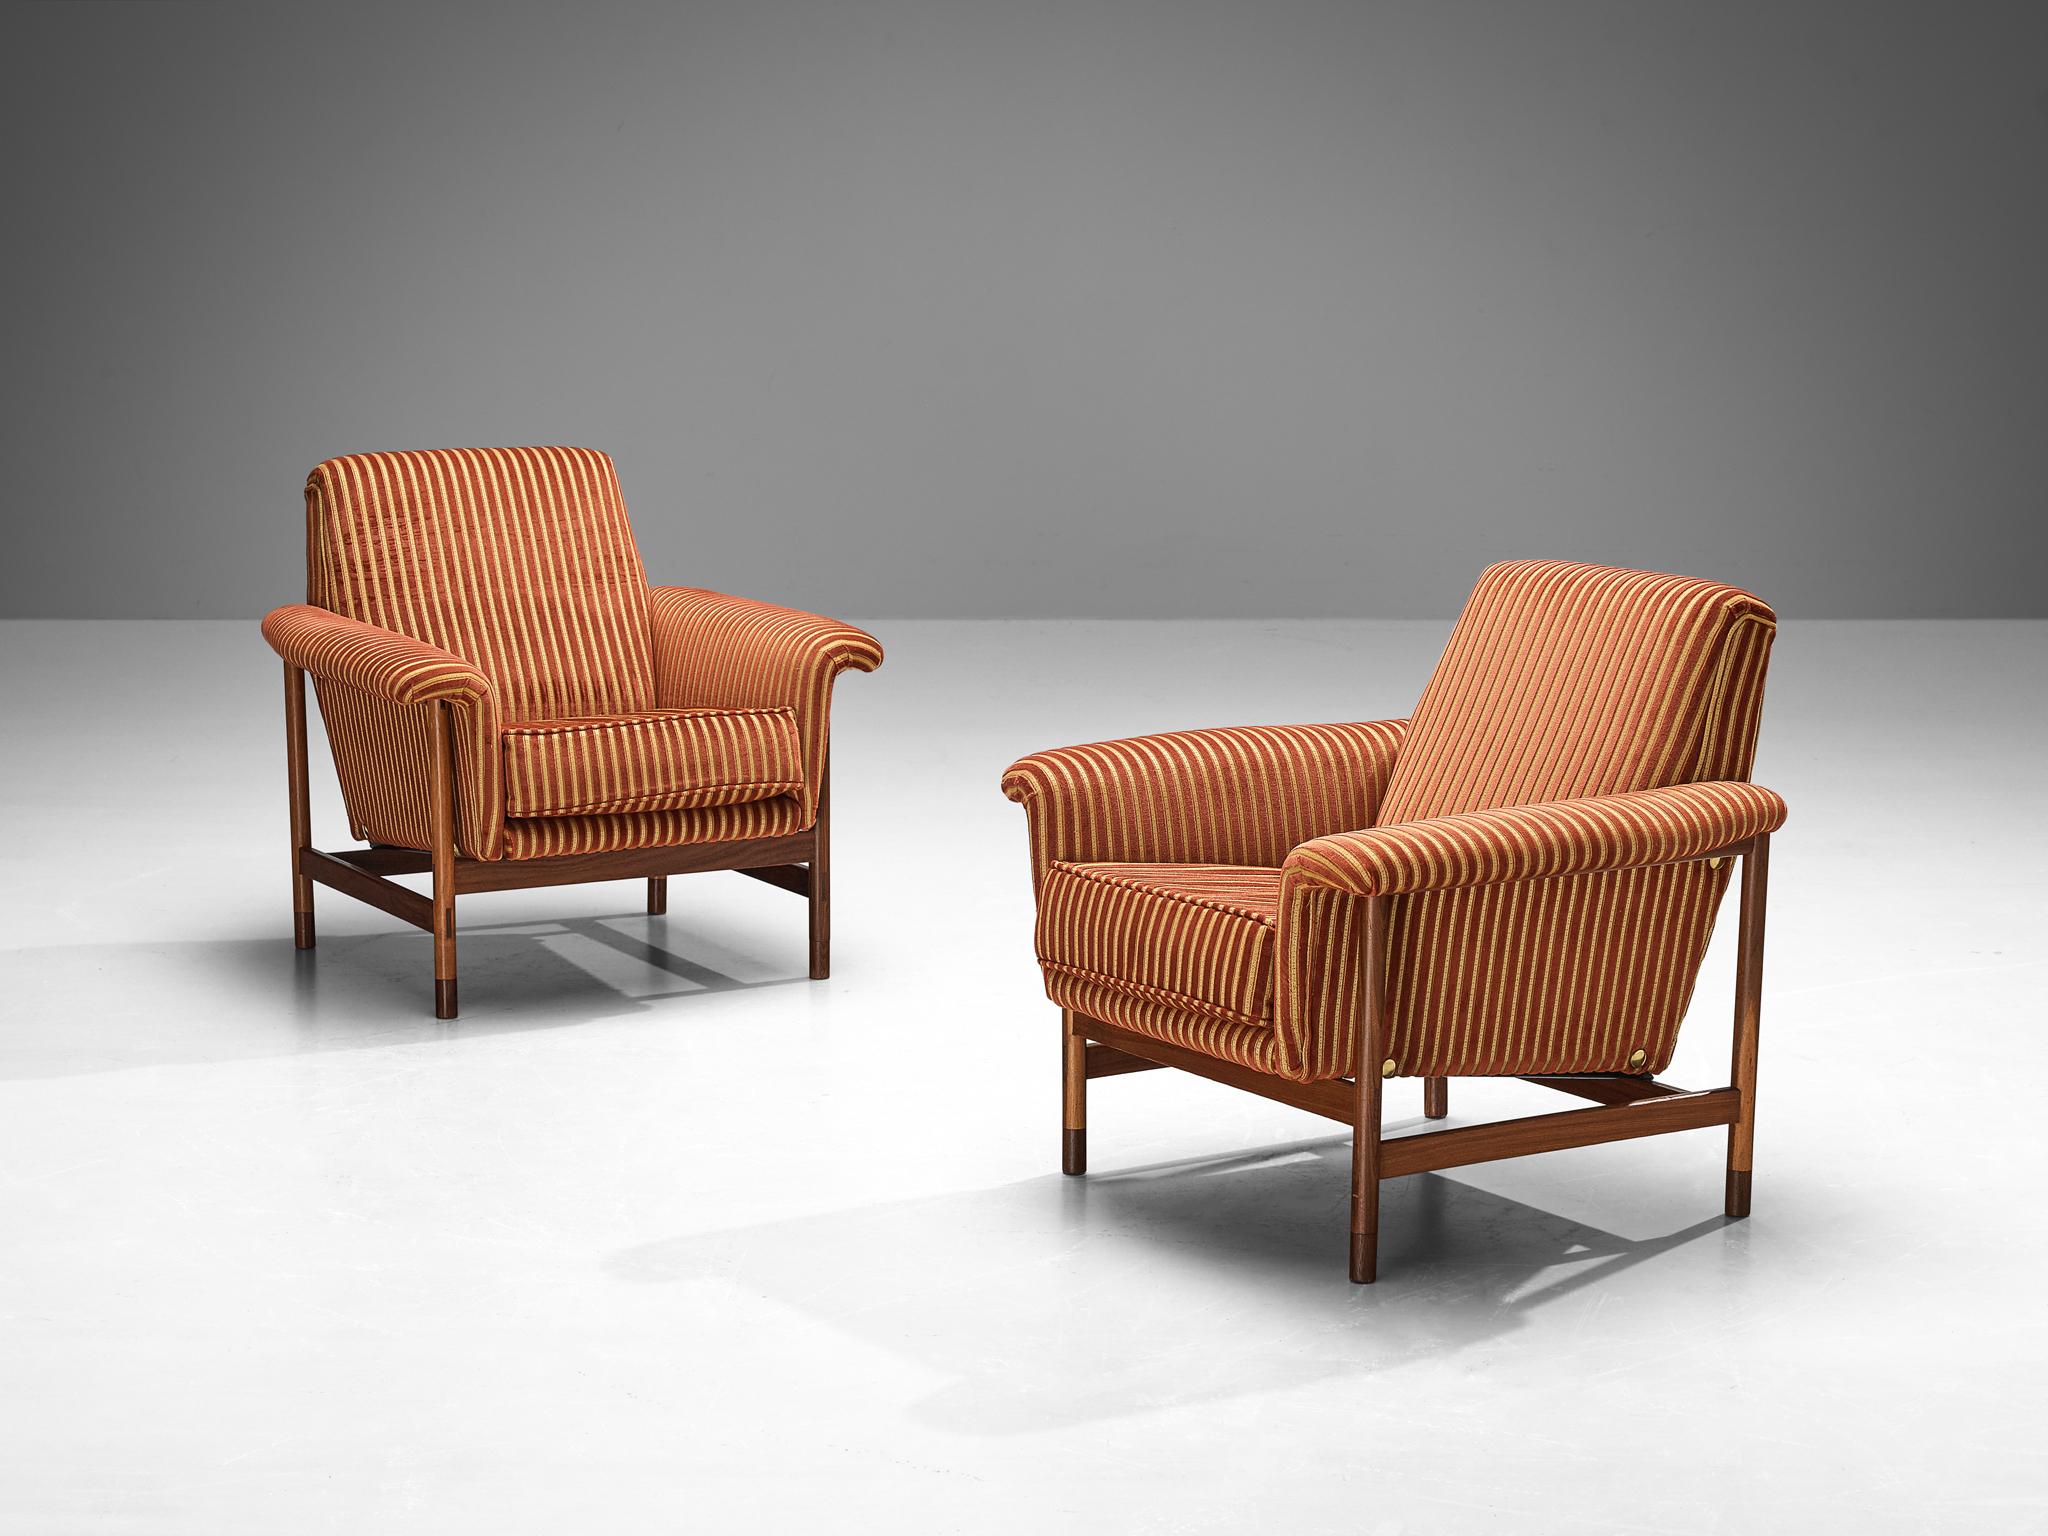 Paire de chaises longues, teck, bois, tissu, Italie, années 1960

Une paire de chaises longues datant des années 1960. Ces fauteuils italiens respirent l'élégance et la sophistication. Fabriqués avec un soin méticuleux, ils affichent un captivant